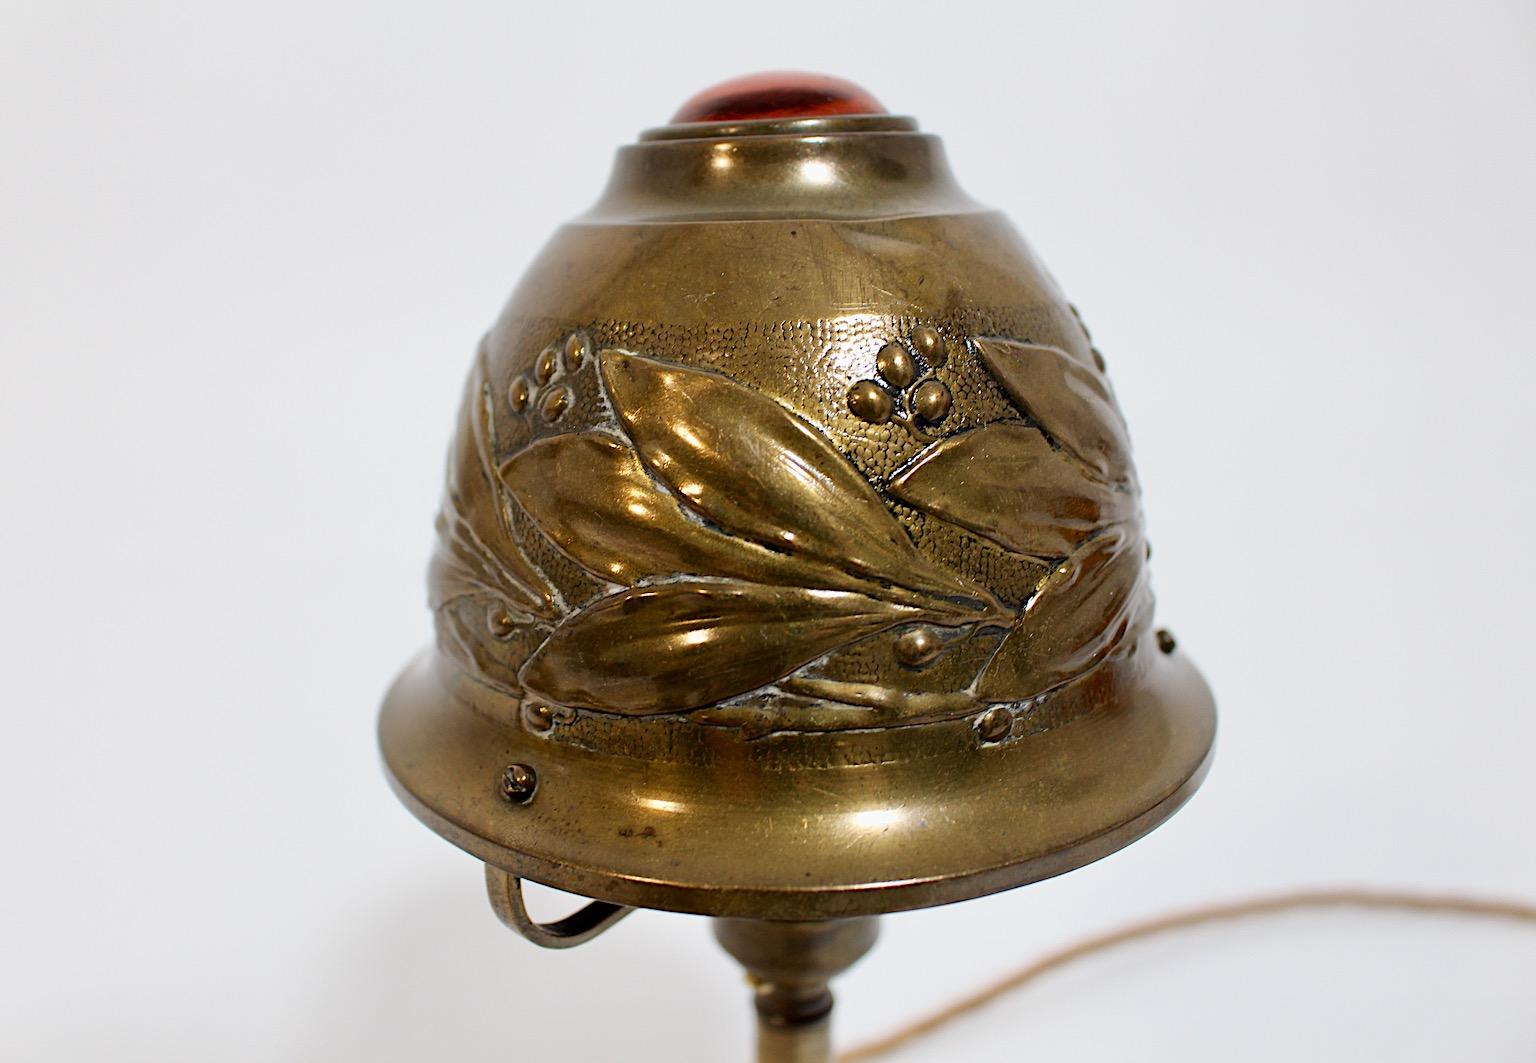 Lampe de table ou de chevet Art Nouveau en forme de dôme en laiton et pierre décorative en verre circa 1910 France.
Une lampe de table étonnante en laiton avec un abat-jour en forme de dôme gaufré et une pierre décorative de couleur